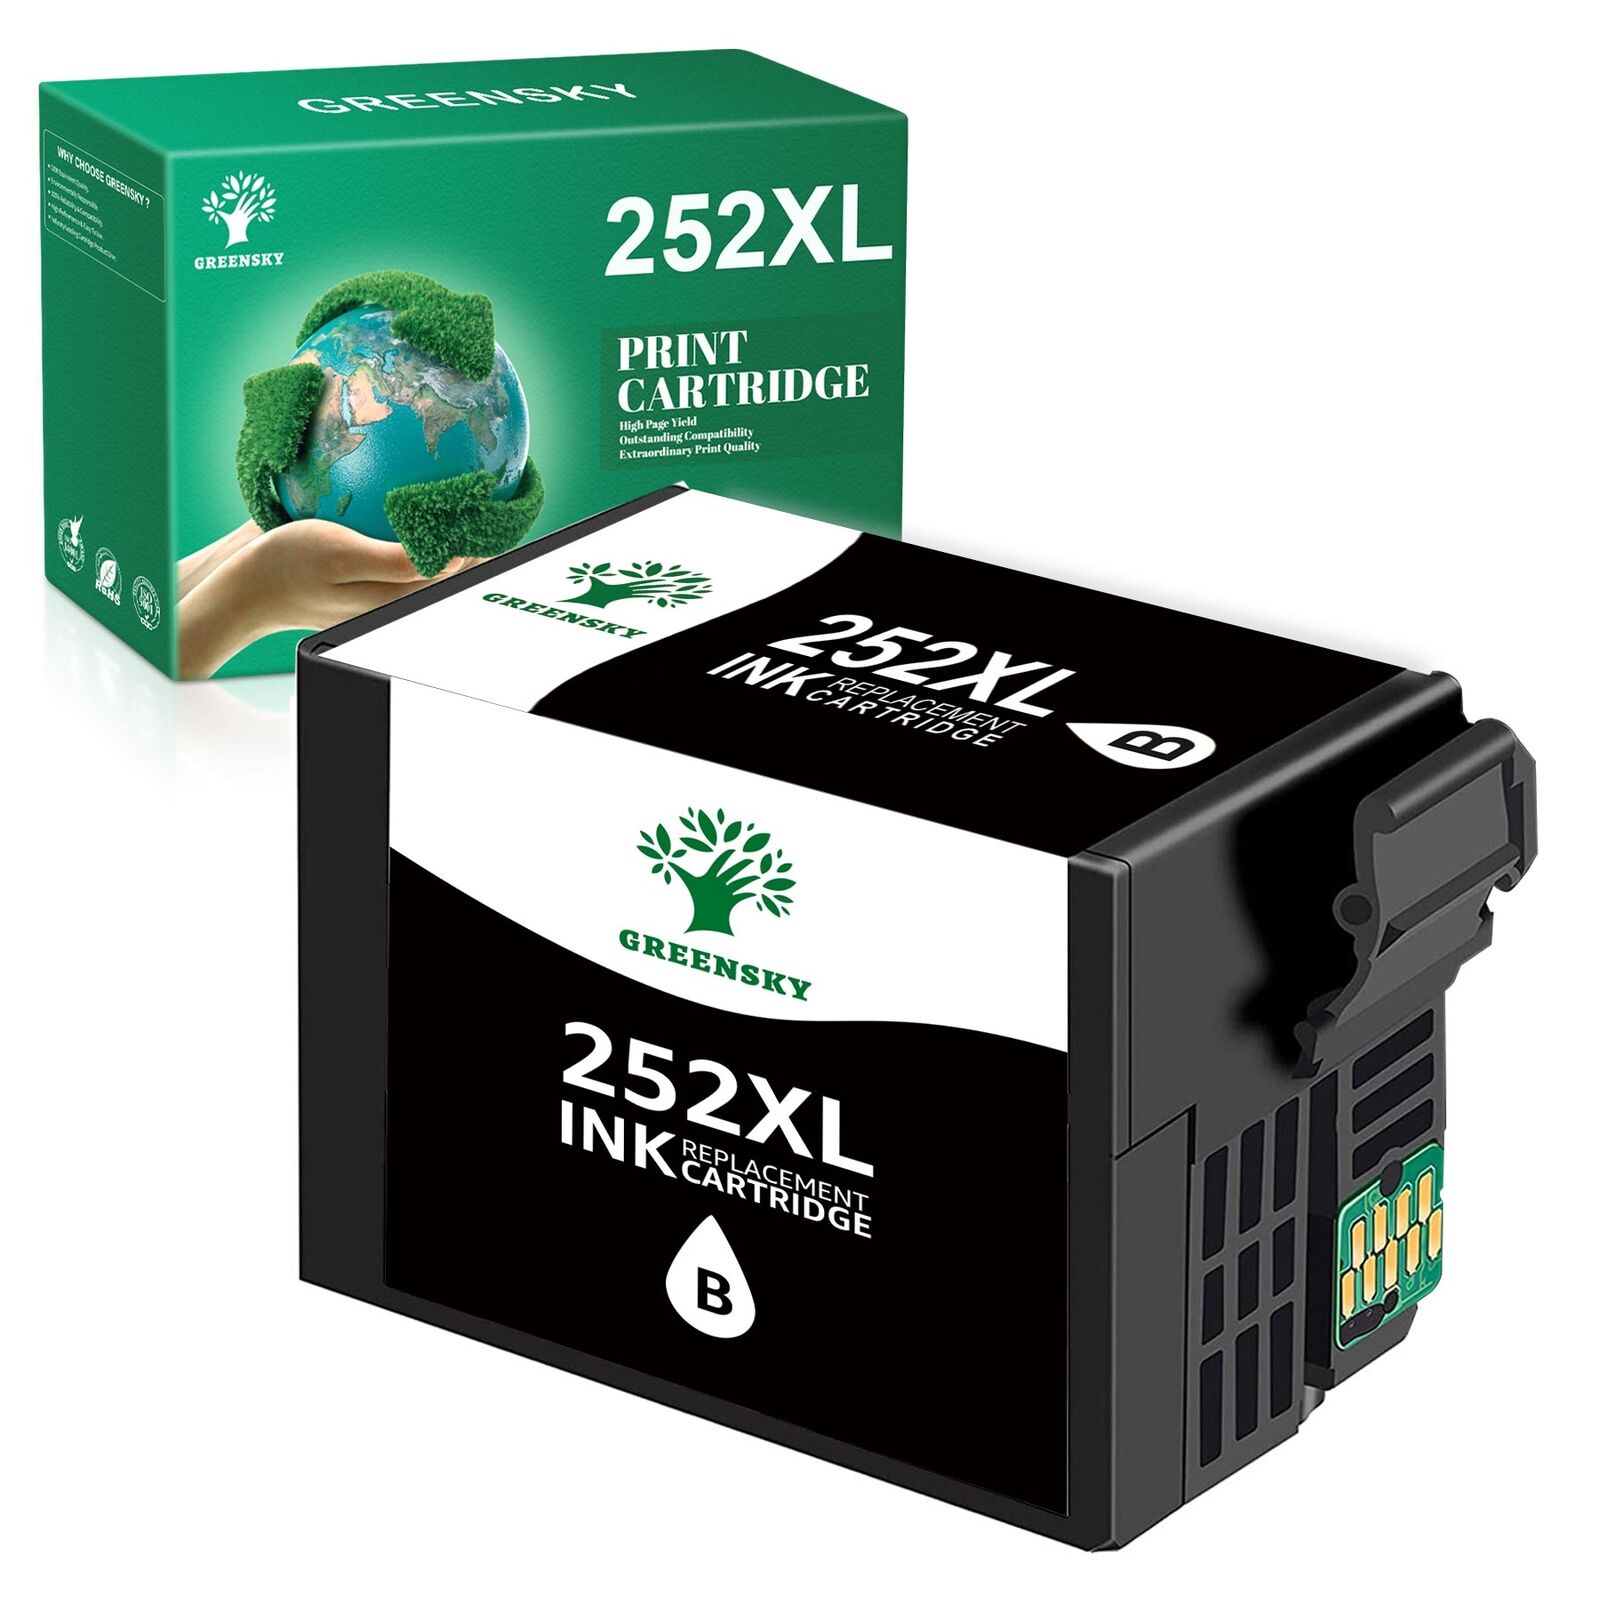 T252XL 252 XL 252XL Ink Cartridge For Epson WorkForce WF-3620 WF-3640 WF-7610